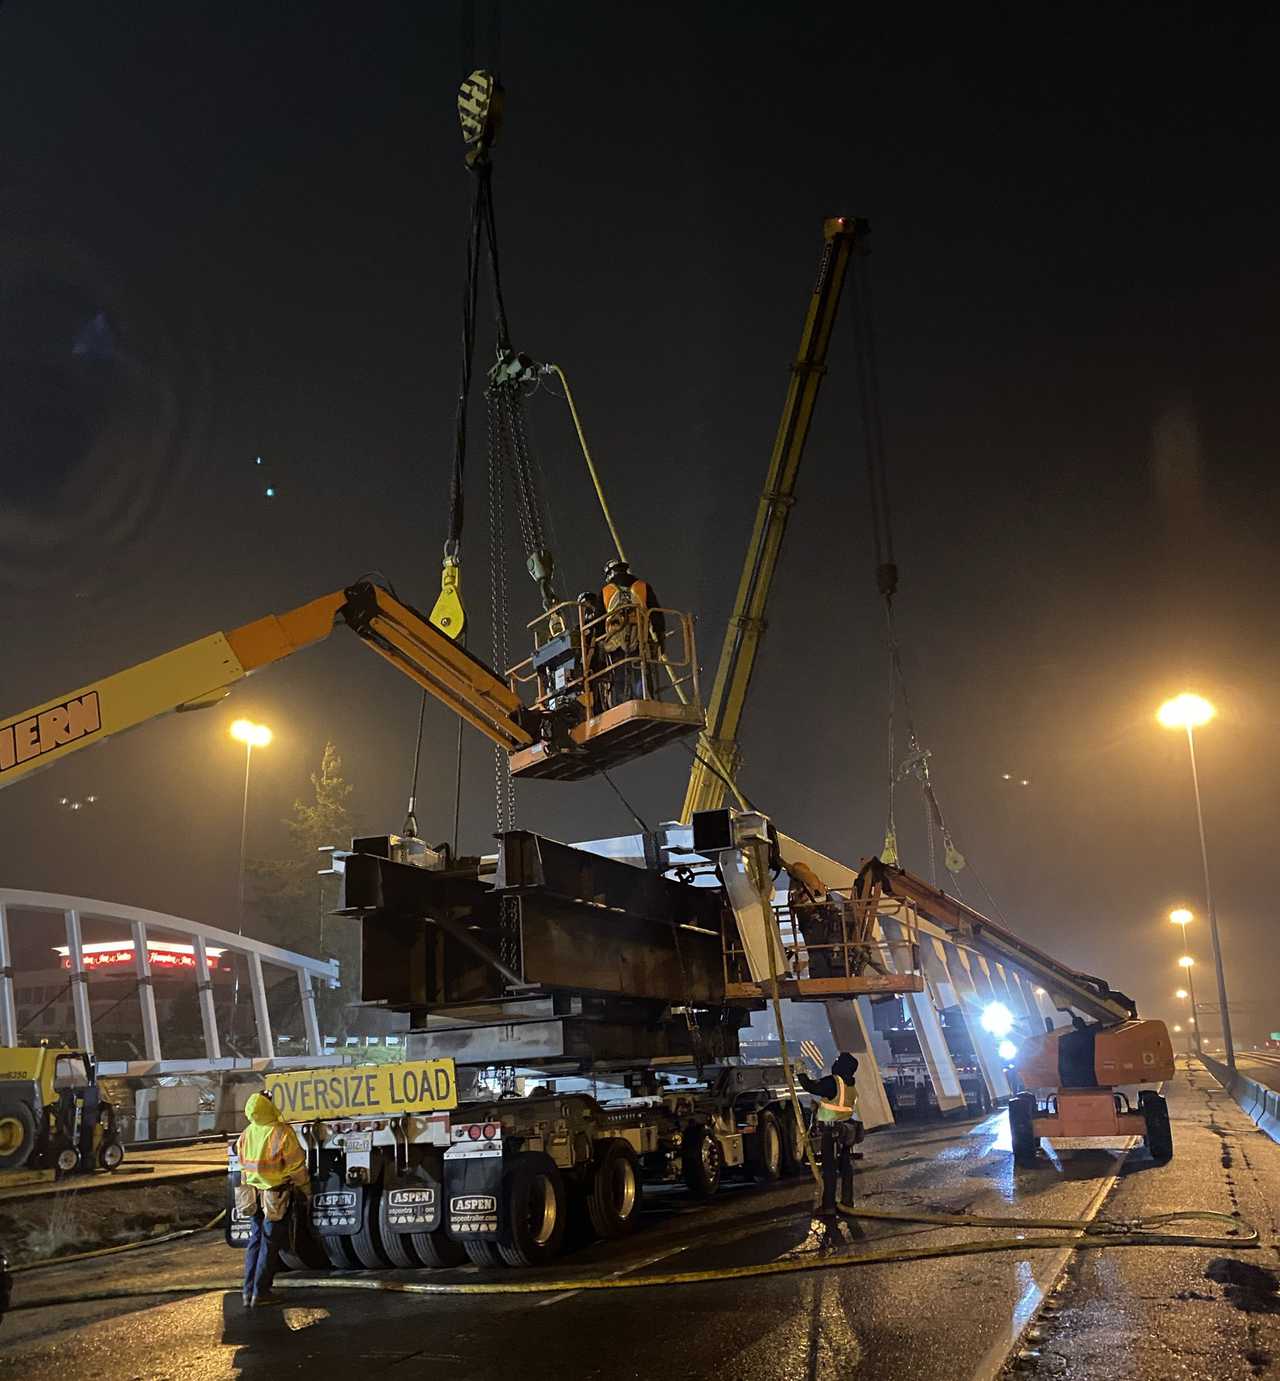 unloading girder at night